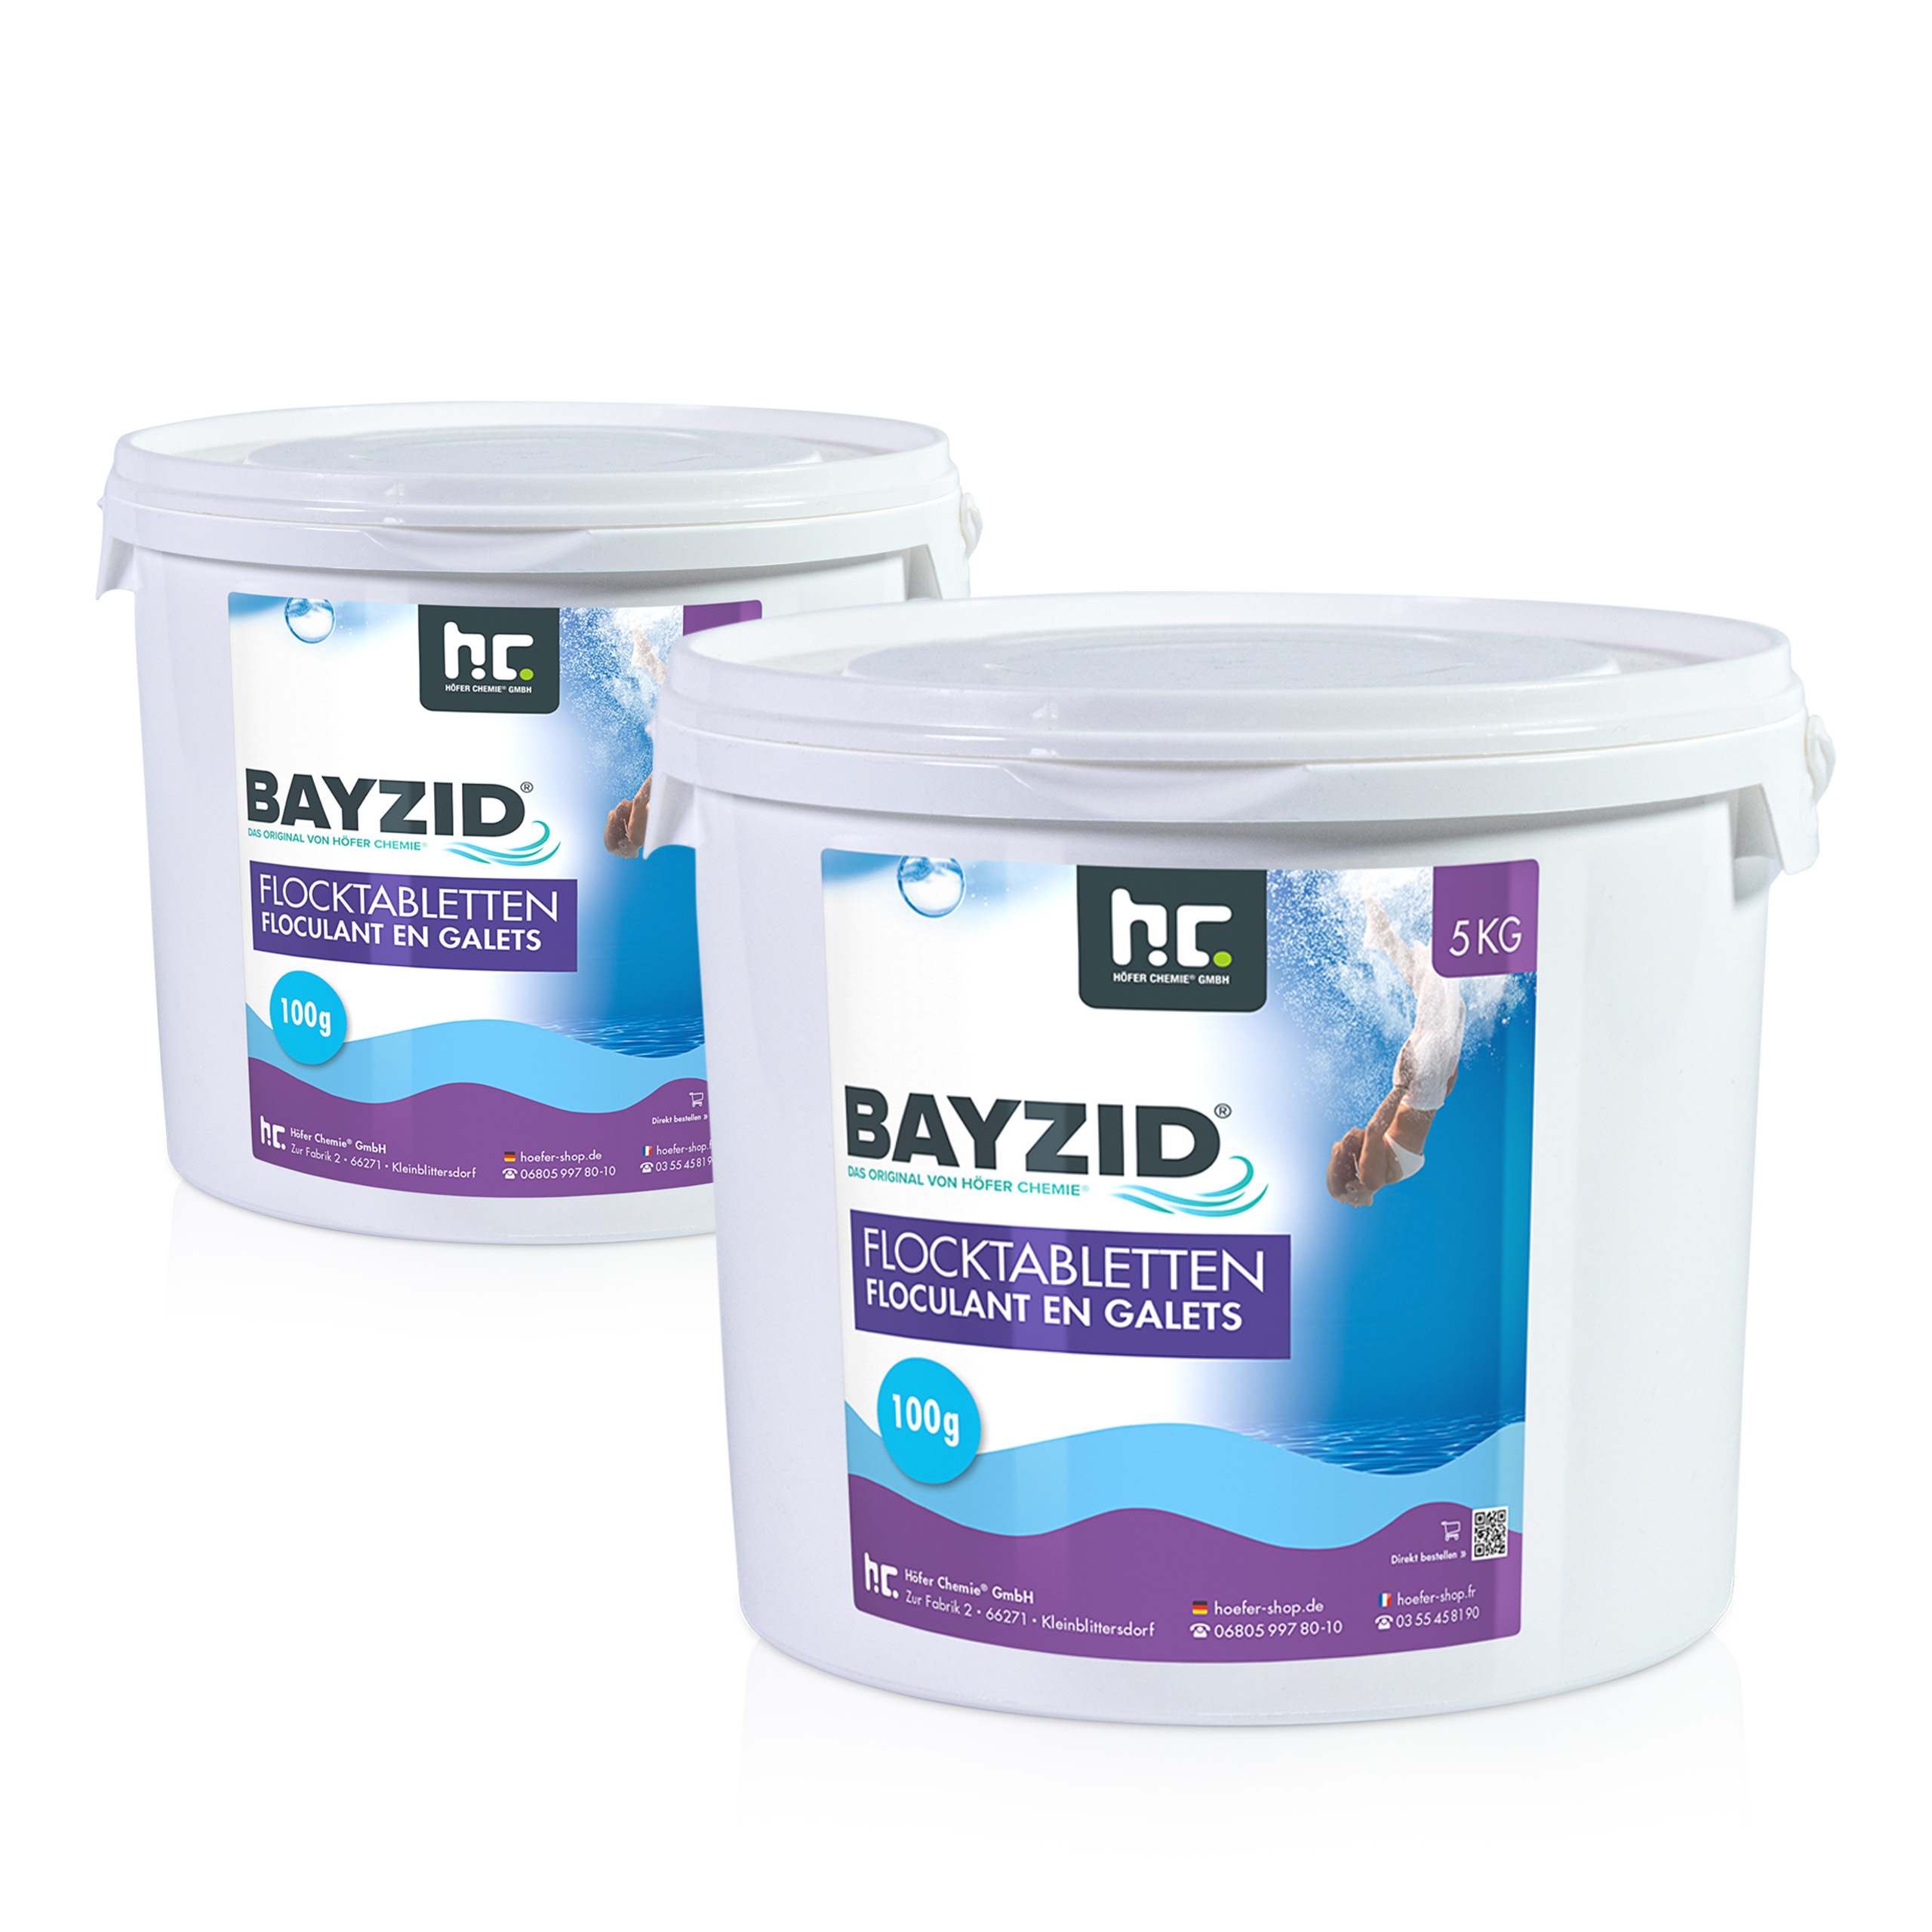 5 kg BAYZID® Flocktabletten für Pools